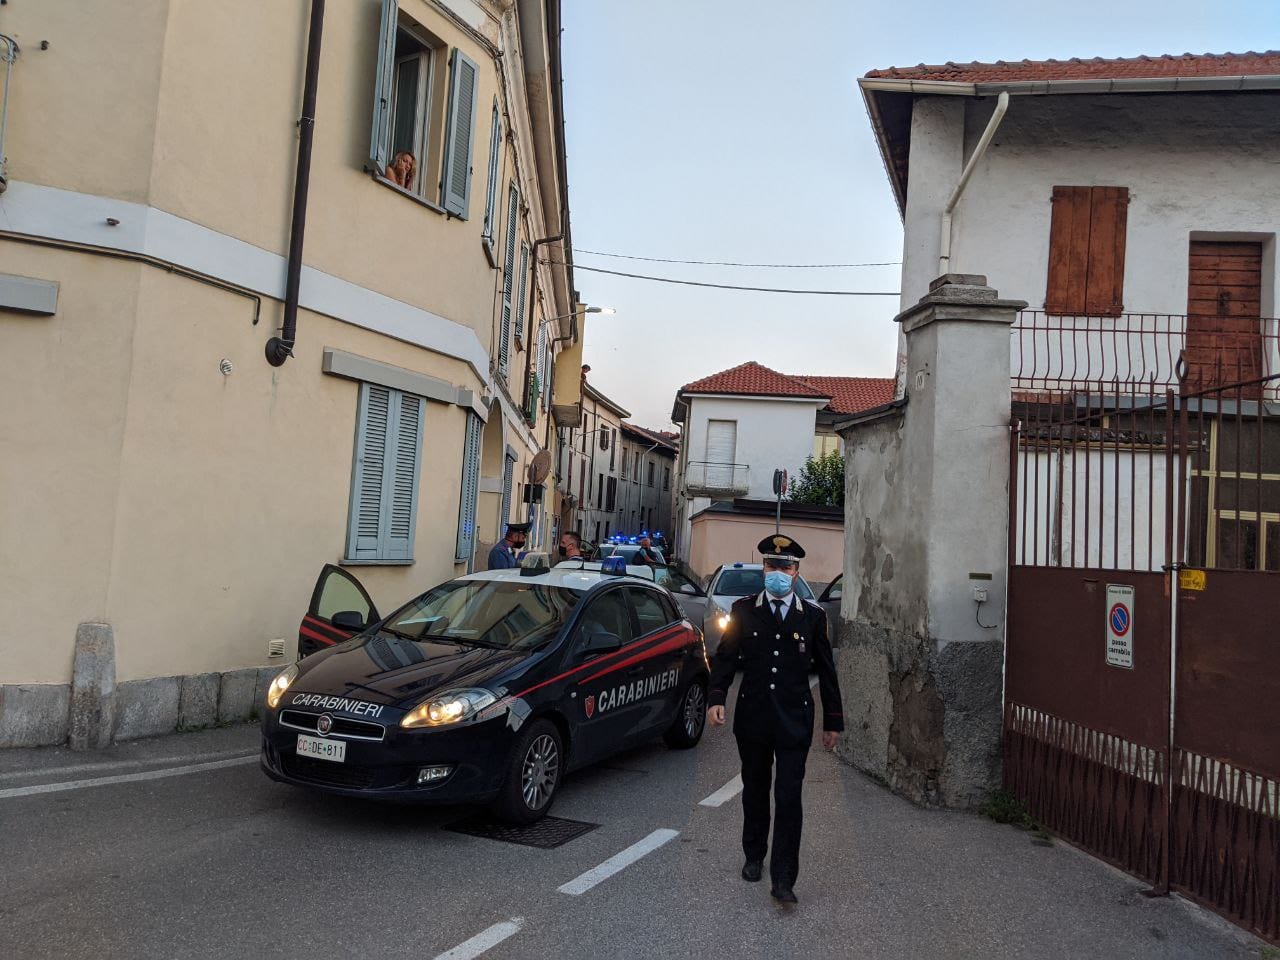 Lite al Matteotti di Saronno, arrivano carabinieri e ambulanze: tre contusi